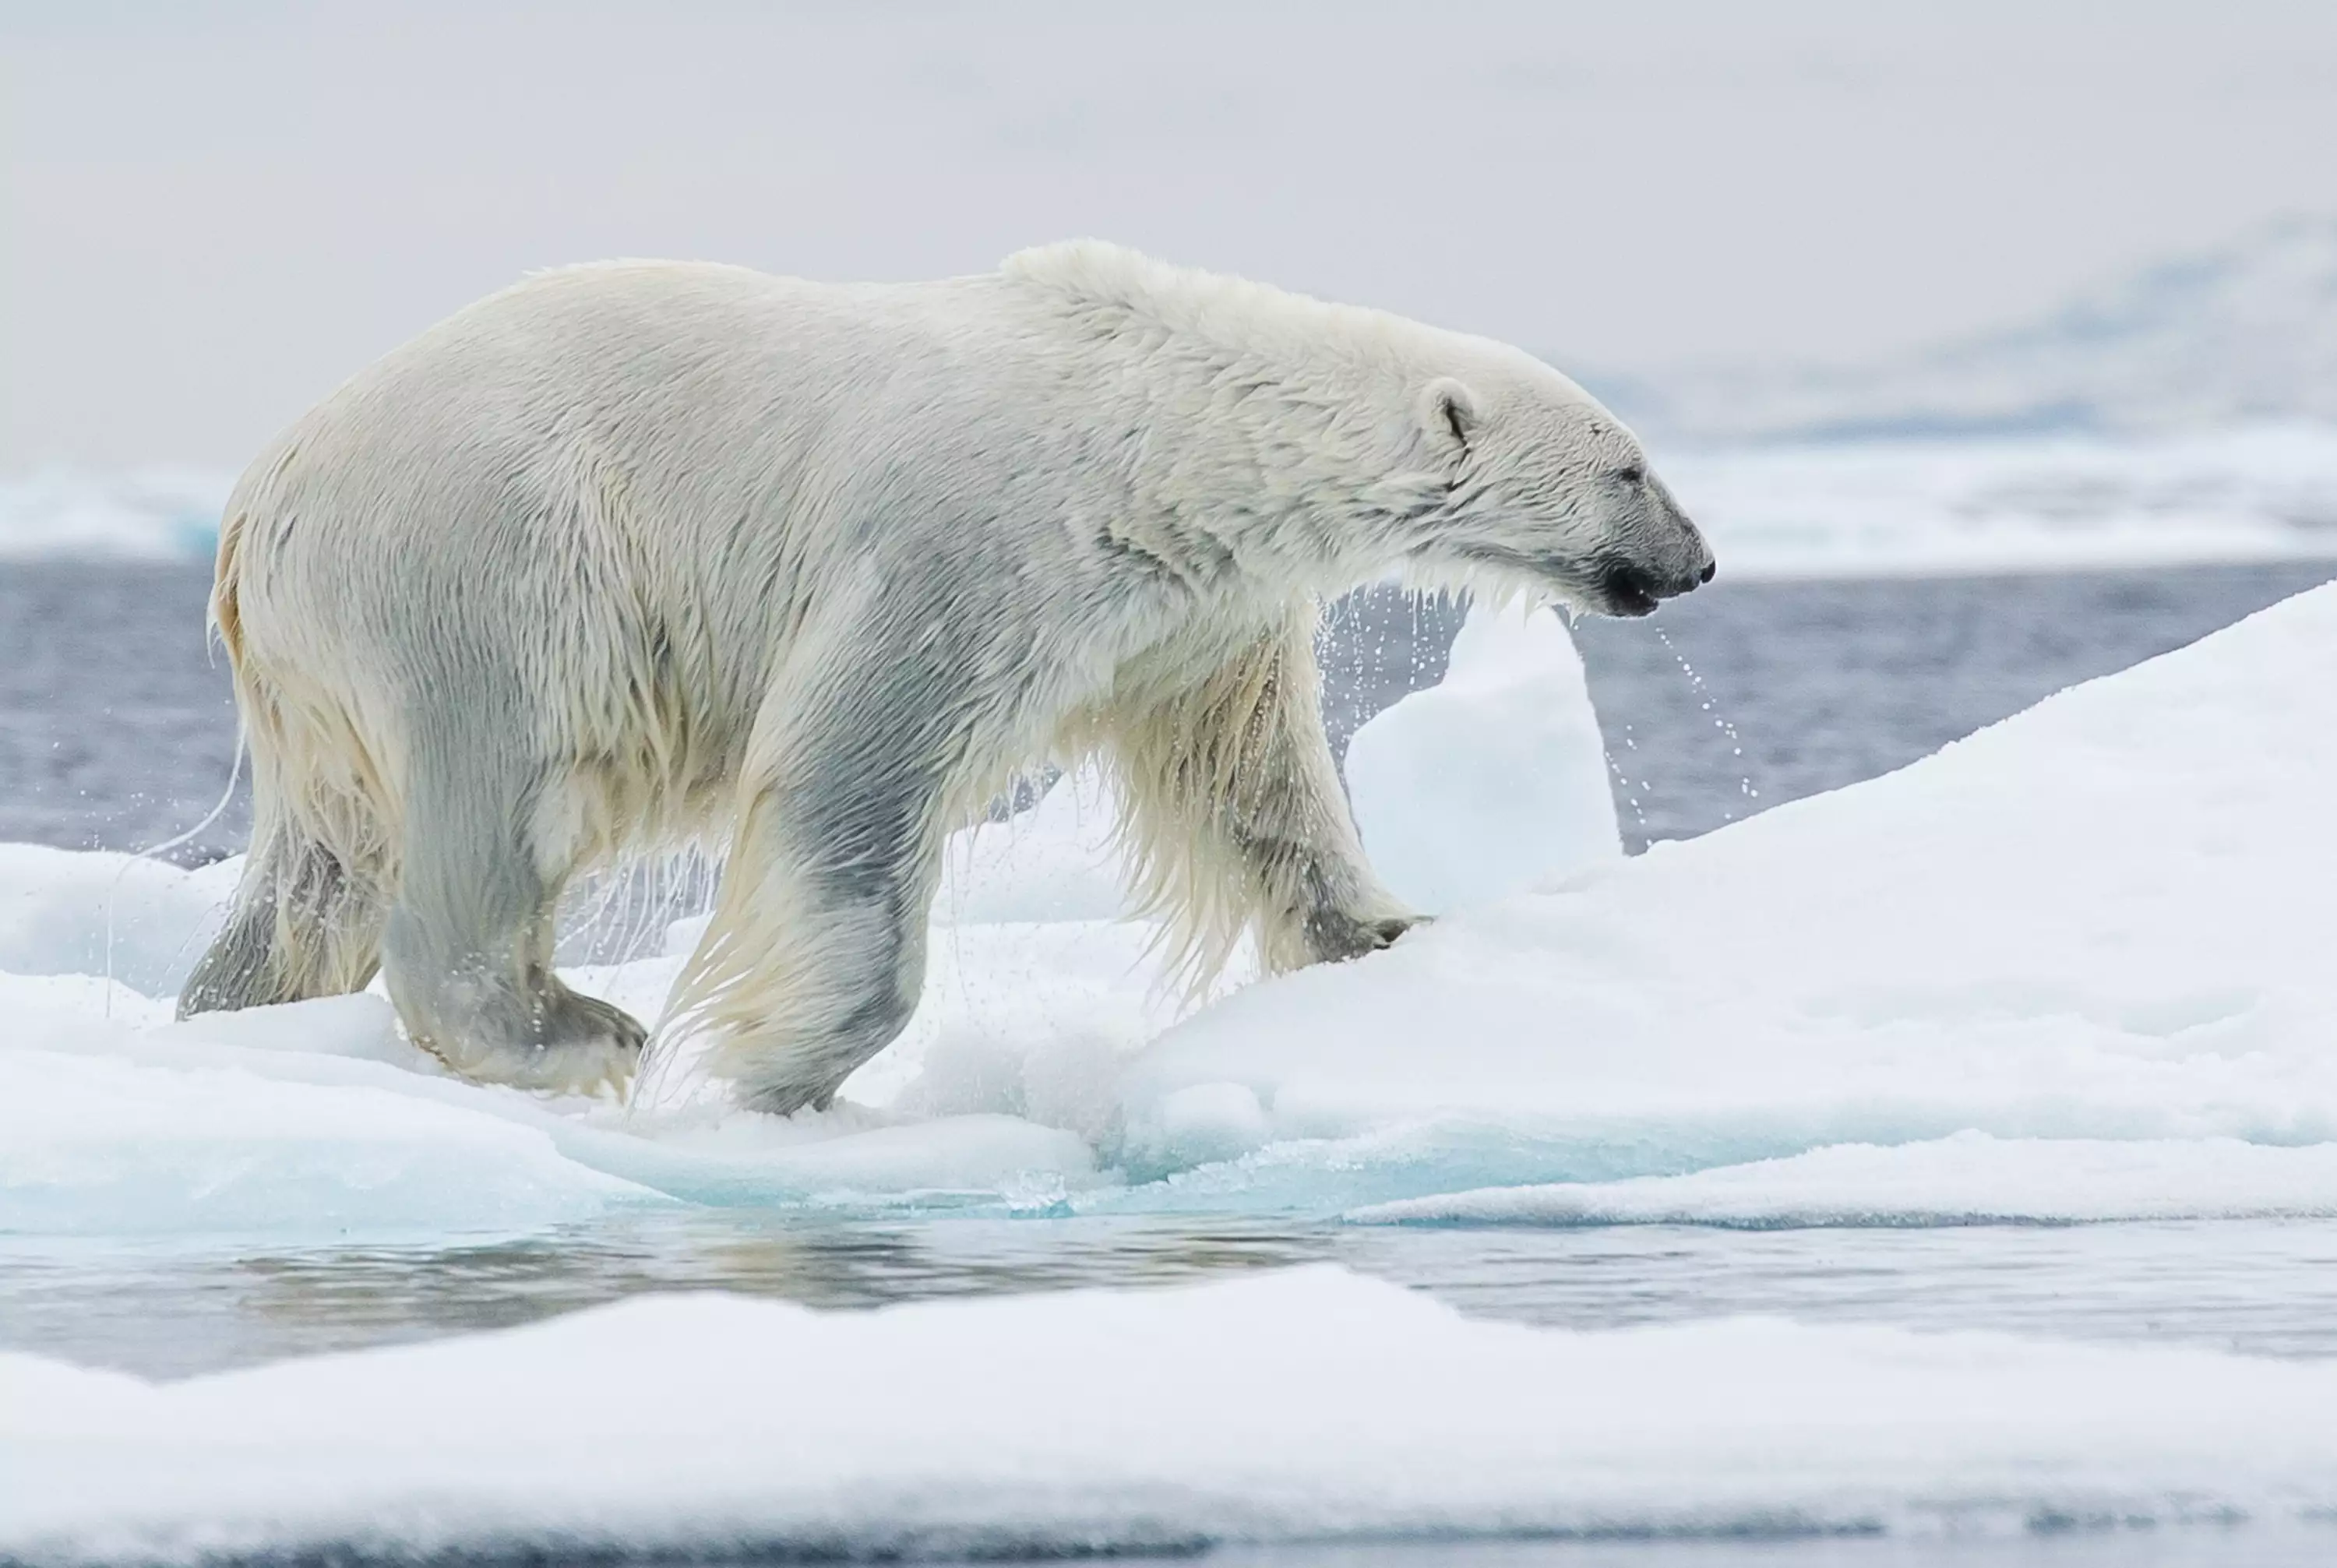 The black skin of an Arctic polar bear